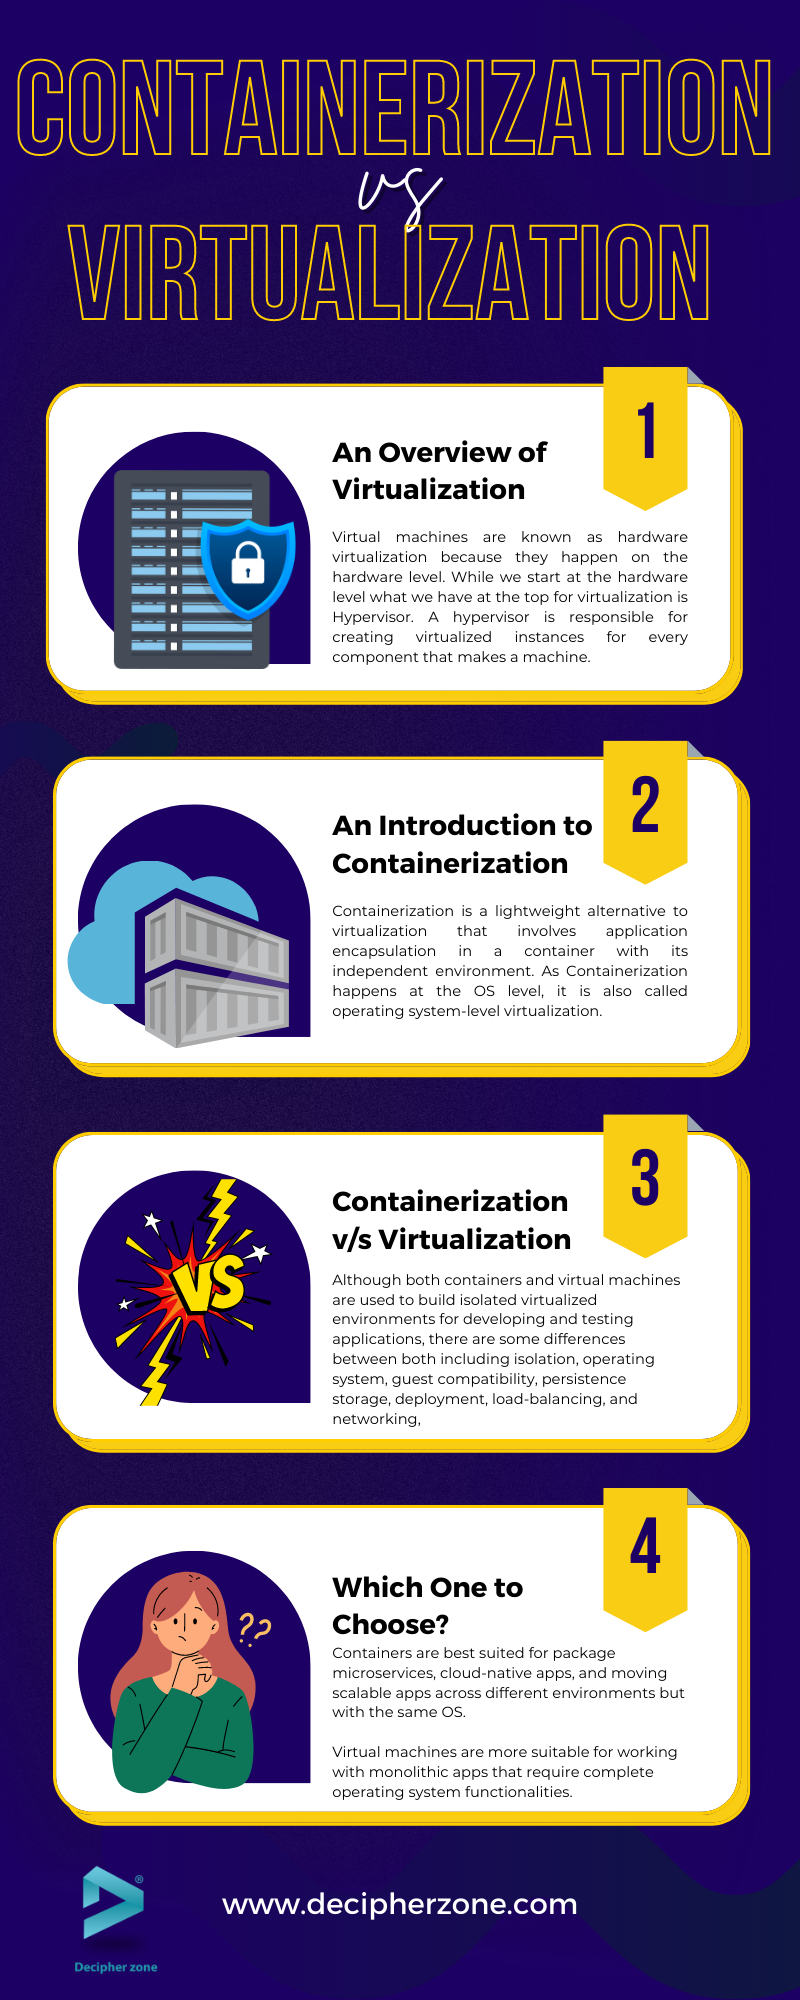 Containerization v/s Virtualization